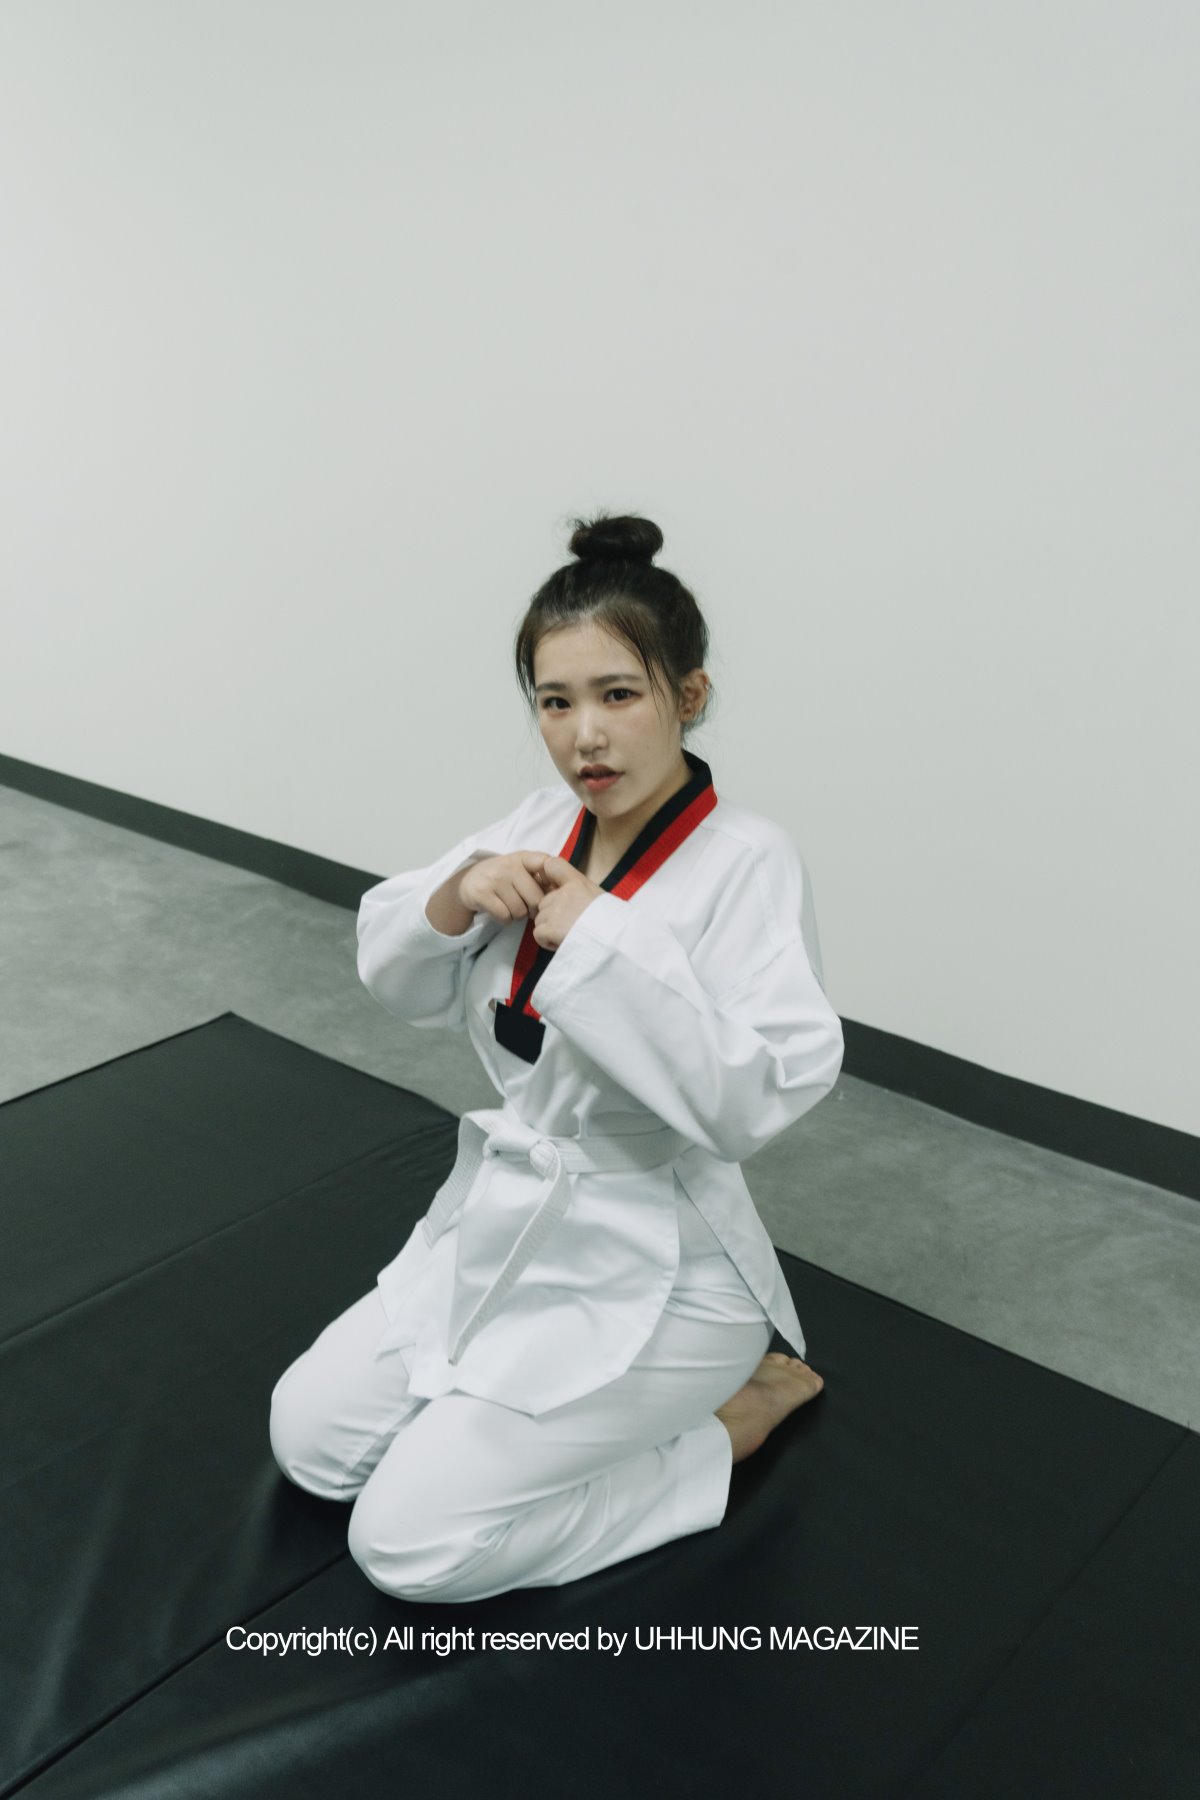 UHHUNG MAGAZINE Jenn Vol 1 Taekwondo Part2 0016 0064588941.jpg